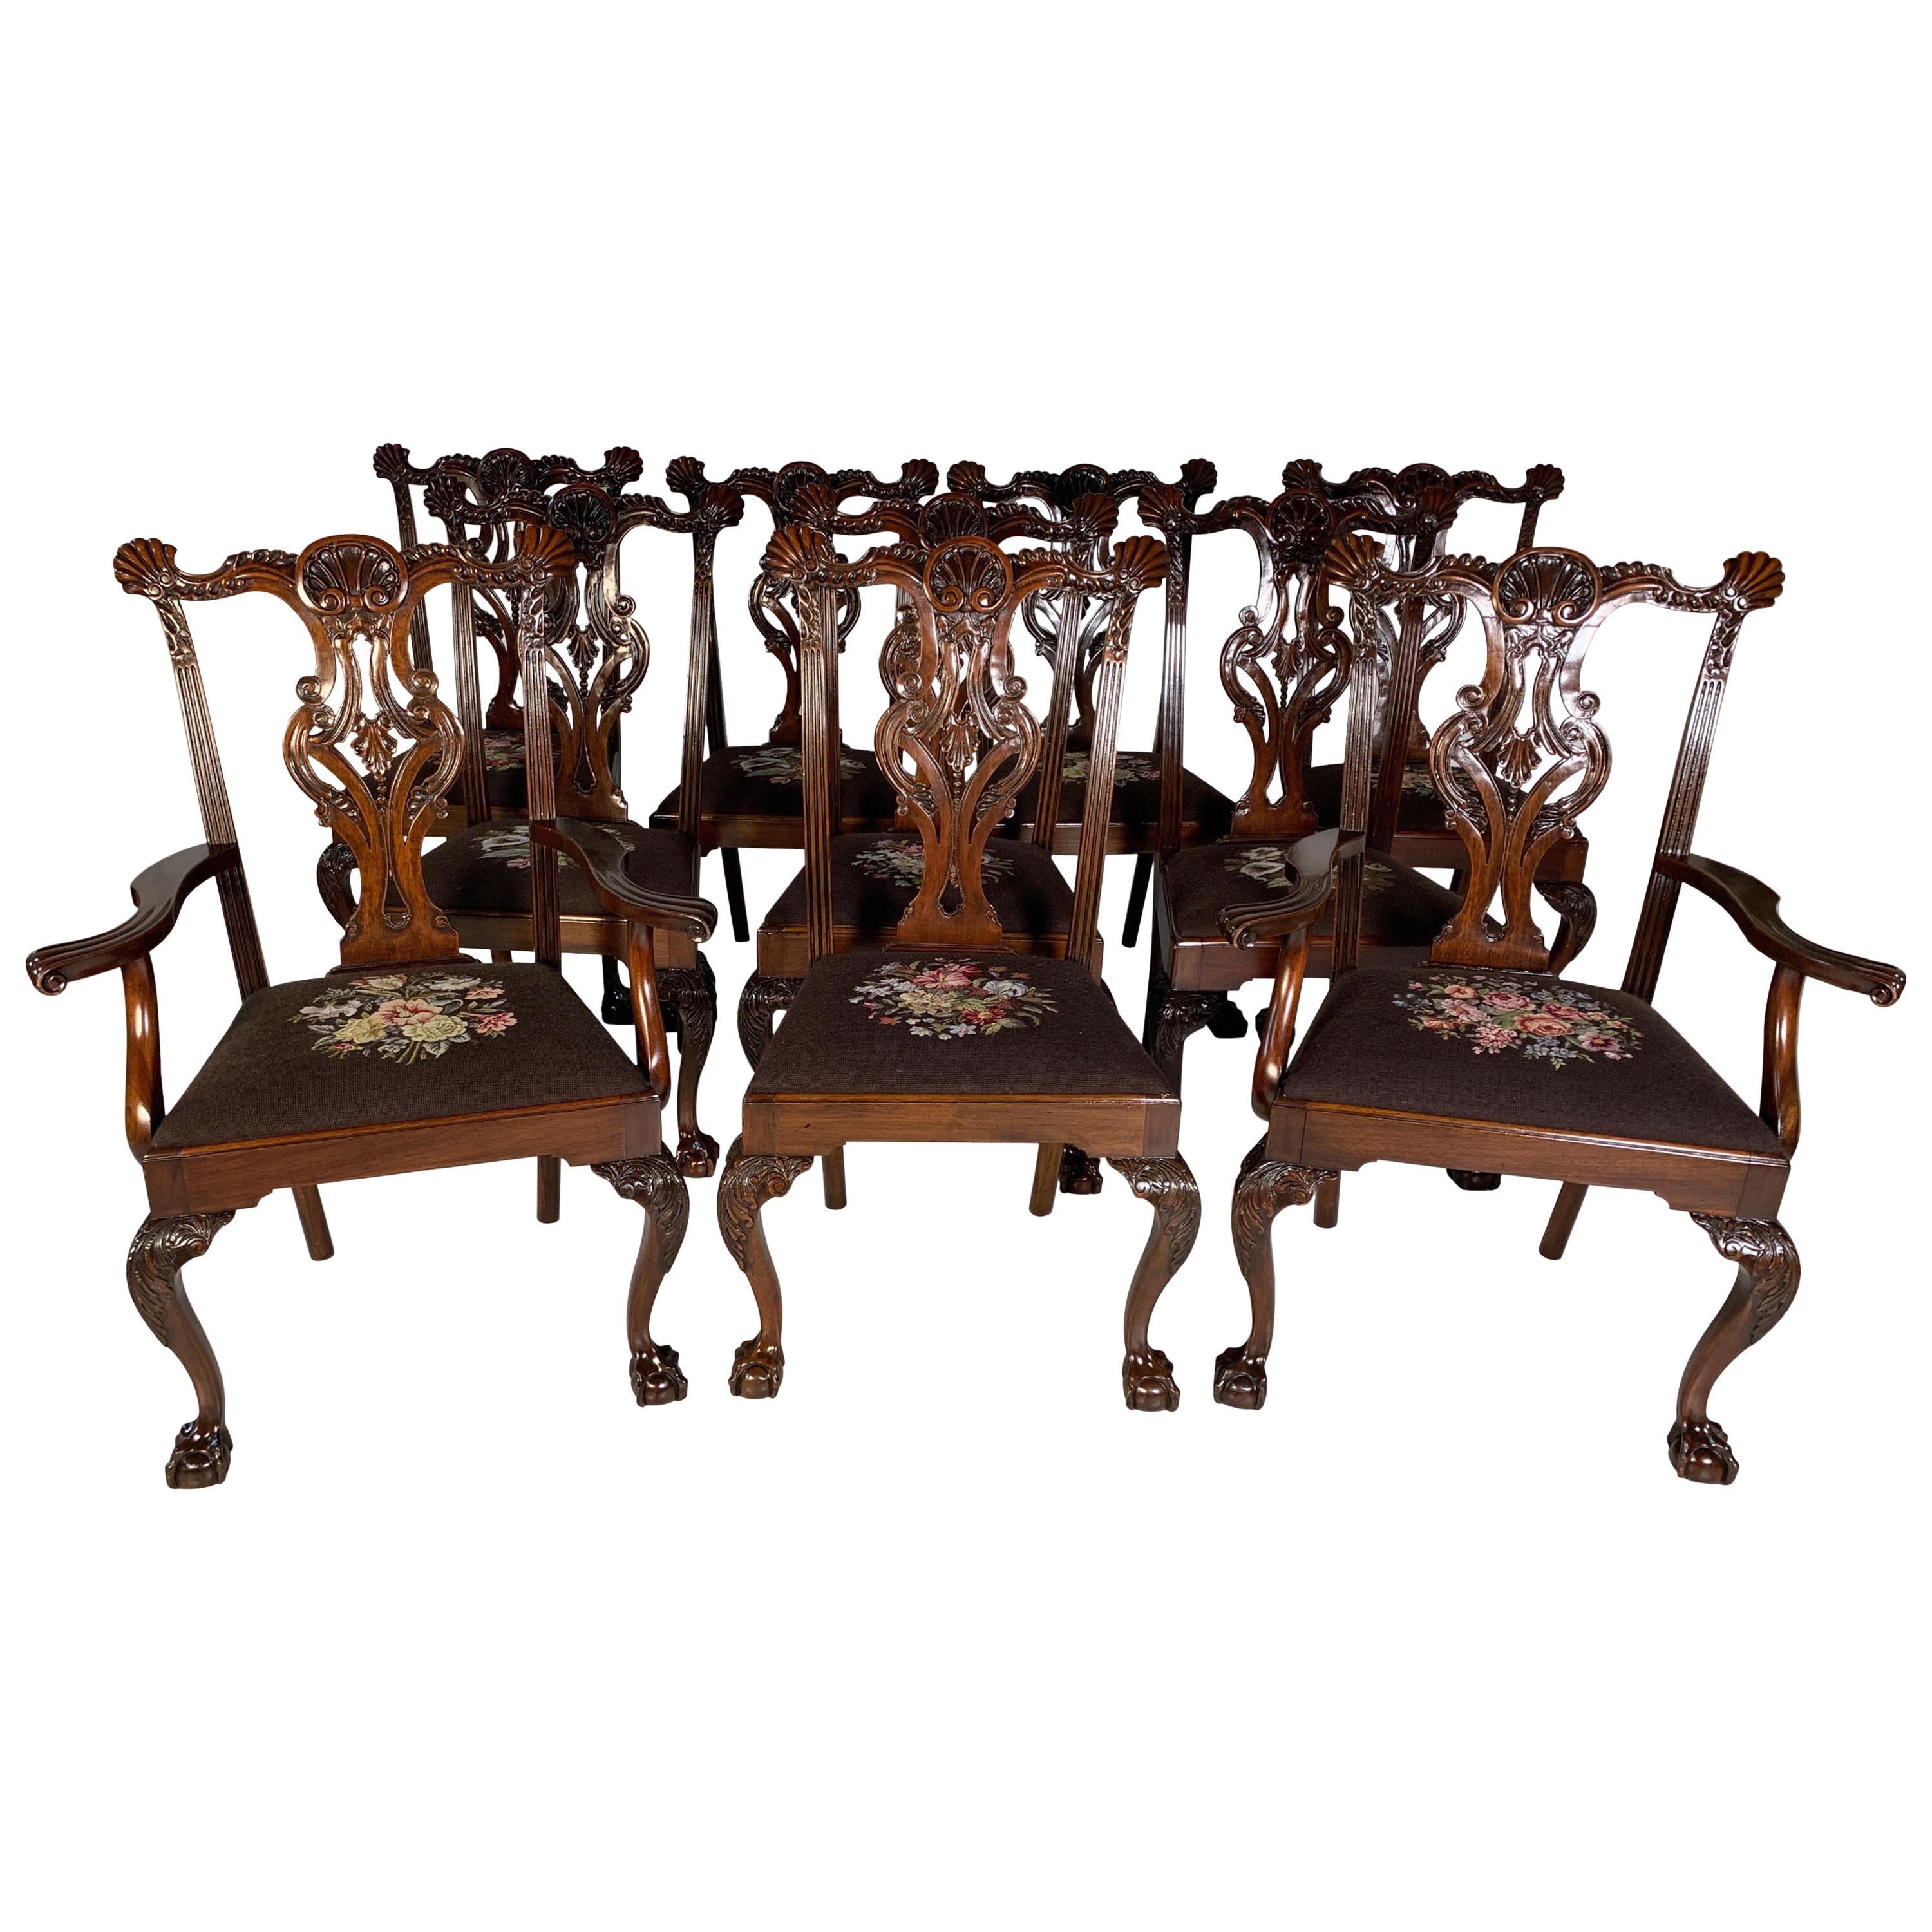 Ensemble de dix chaises de style Chippendale en acajou magnifiquement sculpté à la main, datant d'environ 1870